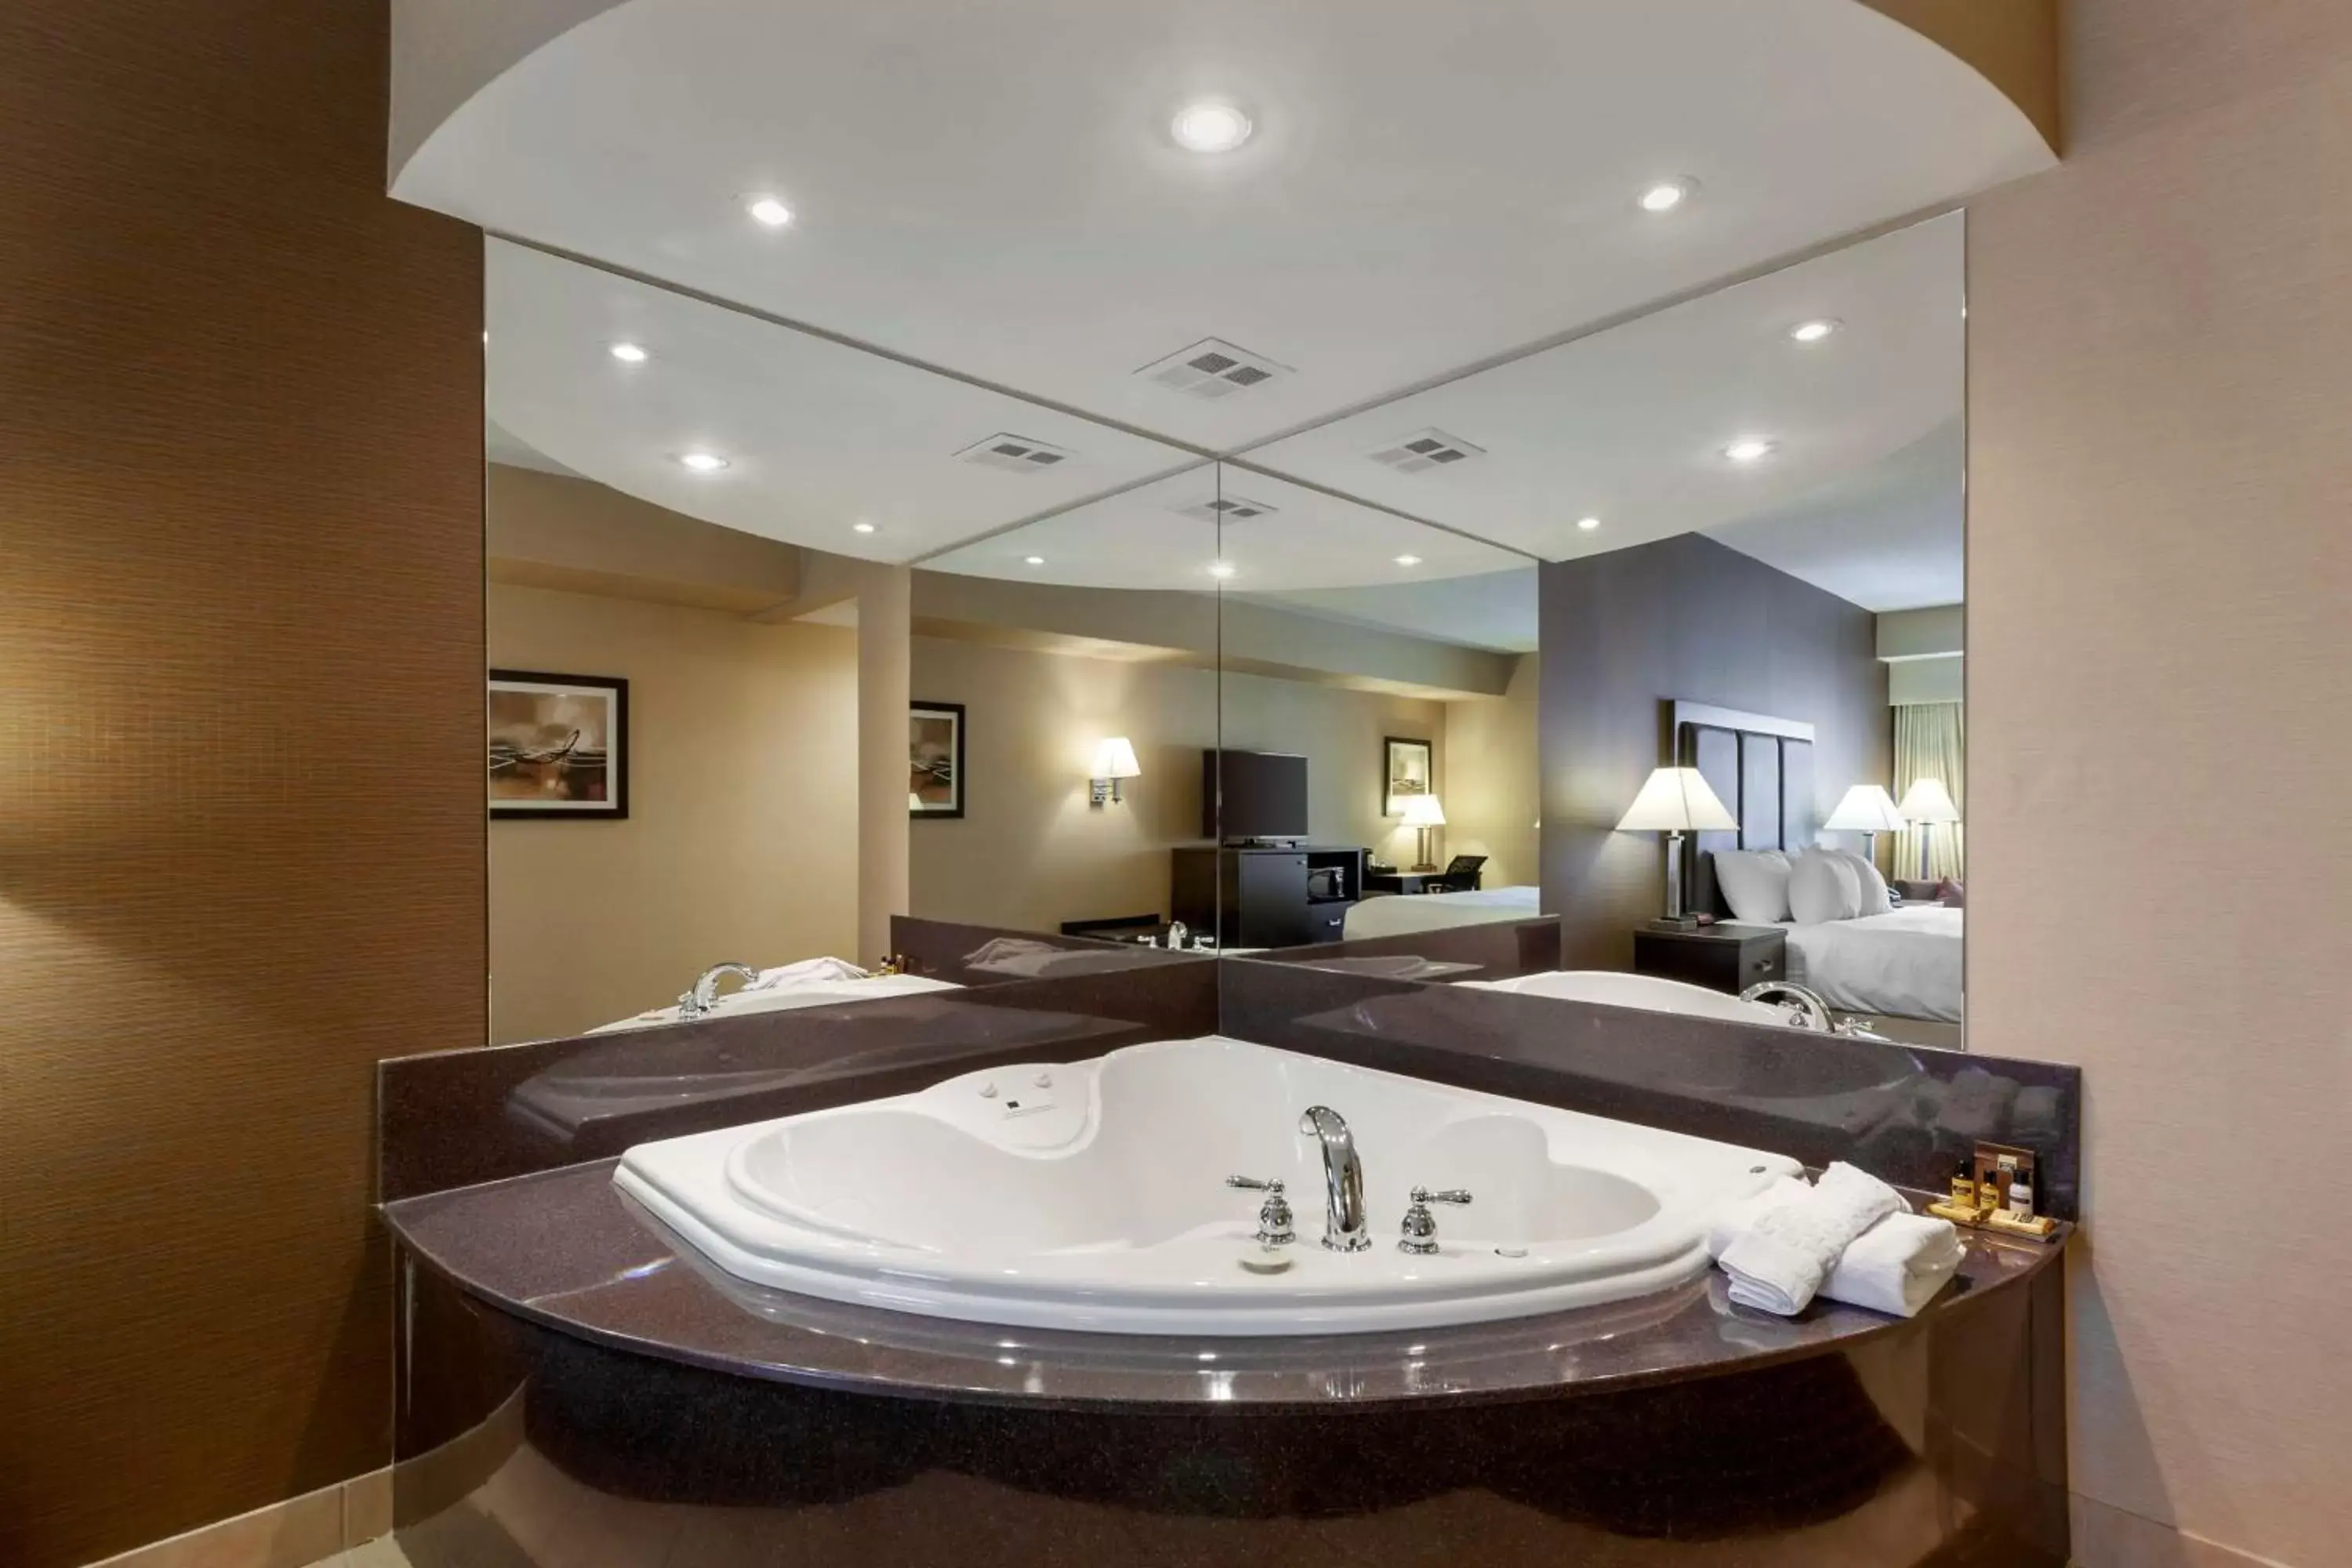 Bedroom in Best Western Plus Burlington Inn & Suites